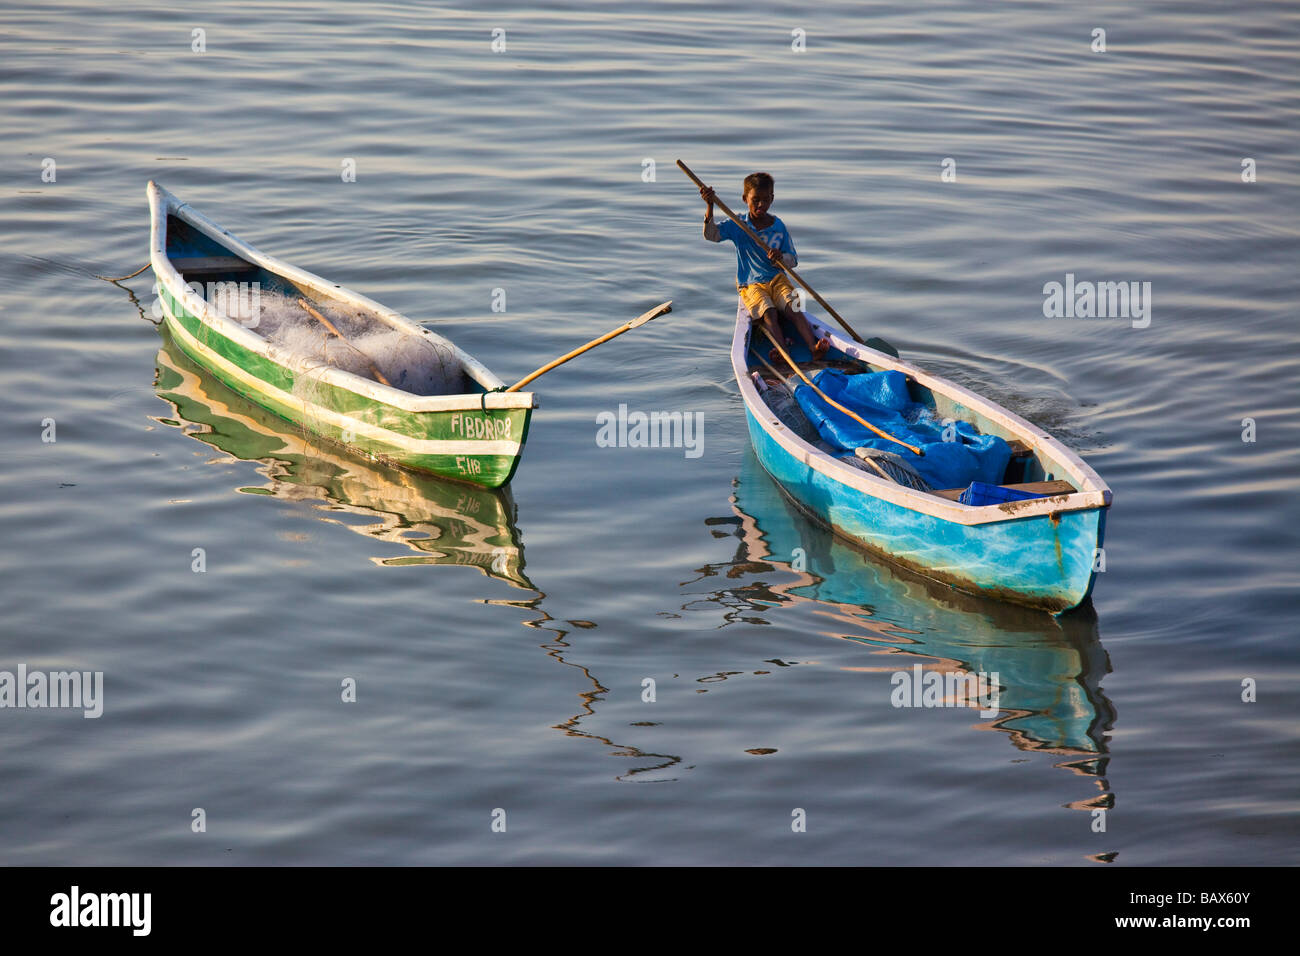 Boy in a Small Rowboat in Mumbai India Stock Photo